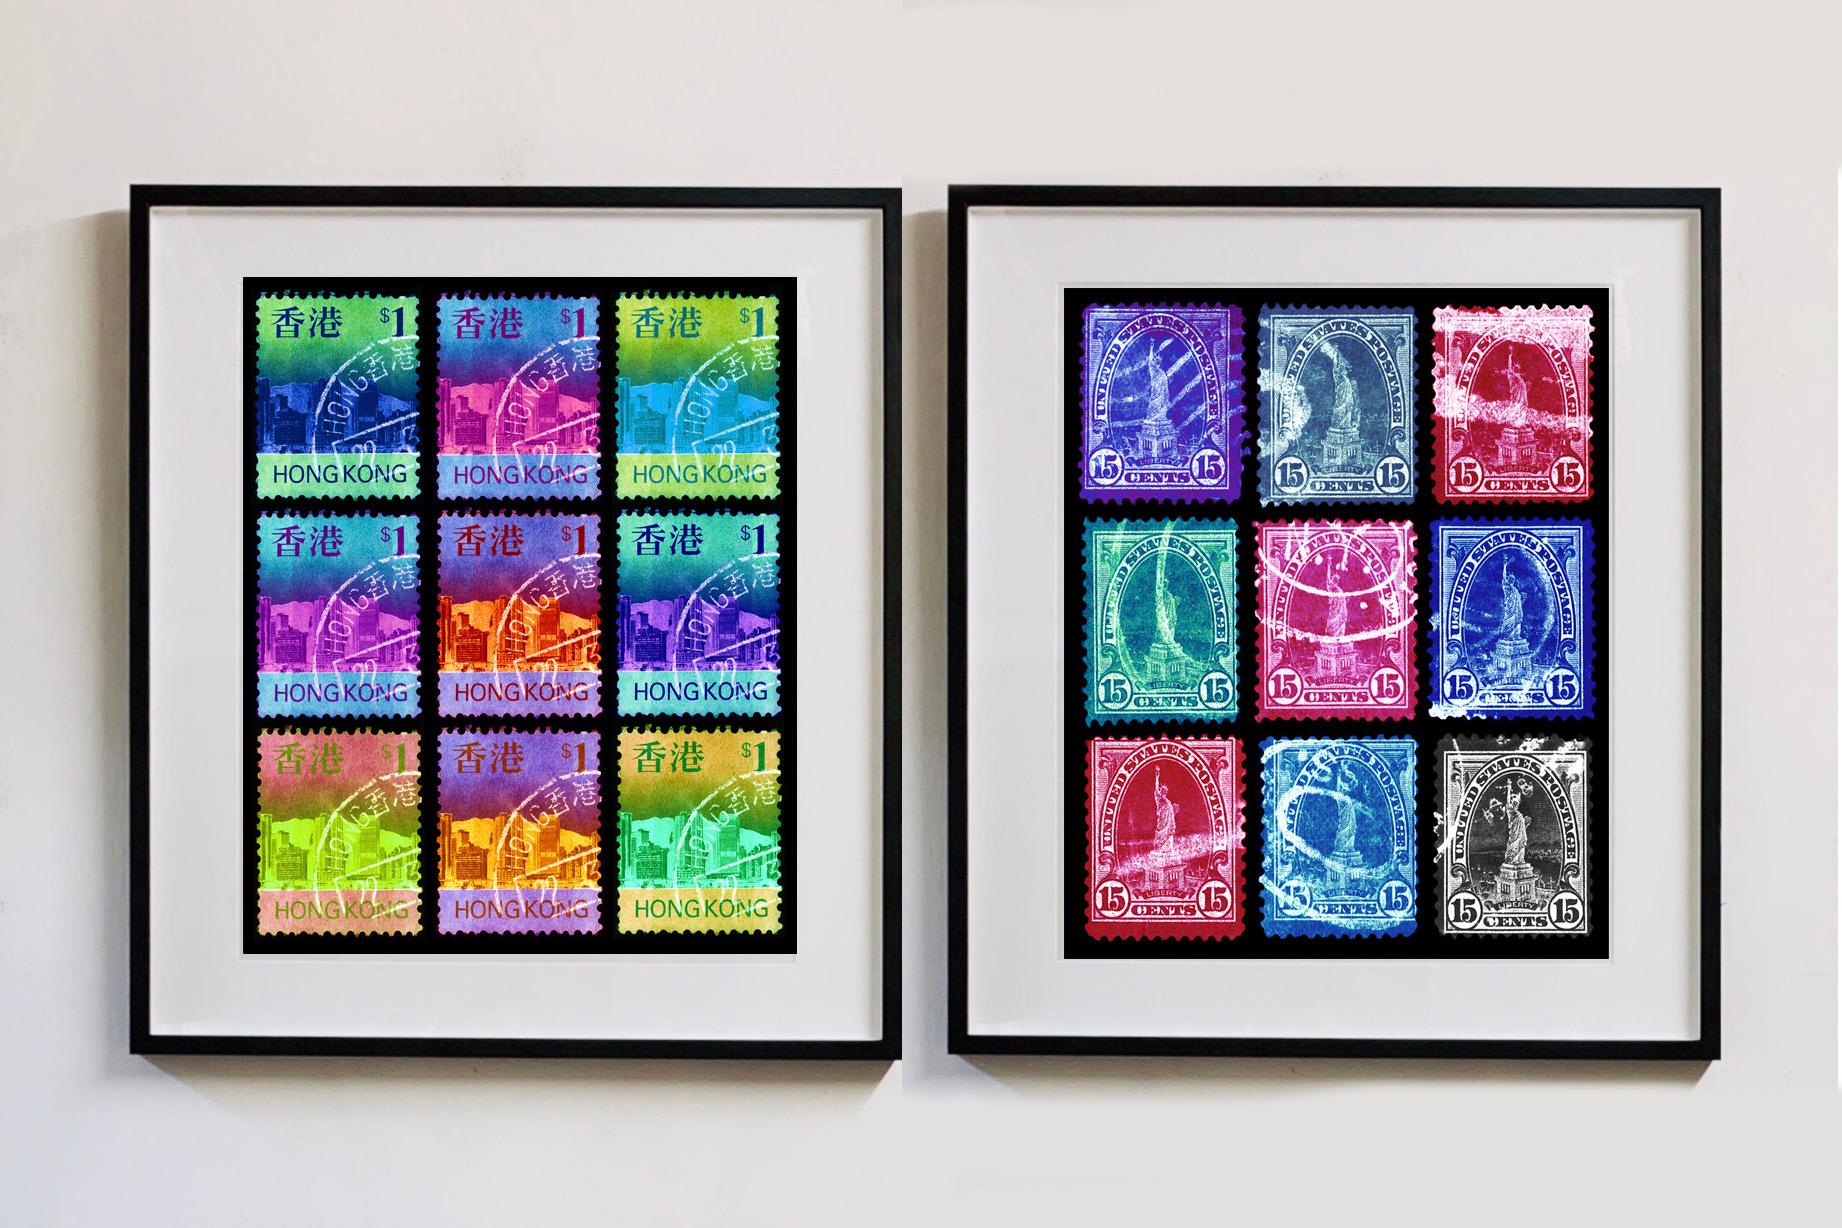 Liberty Multi-Colour Mosaic aus der amerikanischen Briefmarkensammlung von Heidler & Heeps erweckt diese historischen Briefmarken in der Pop Art des 21. Jahrhunderts zu neuem Leben.

Dieses Kunstwerk ist eine limitierte Auflage von 25 glänzenden